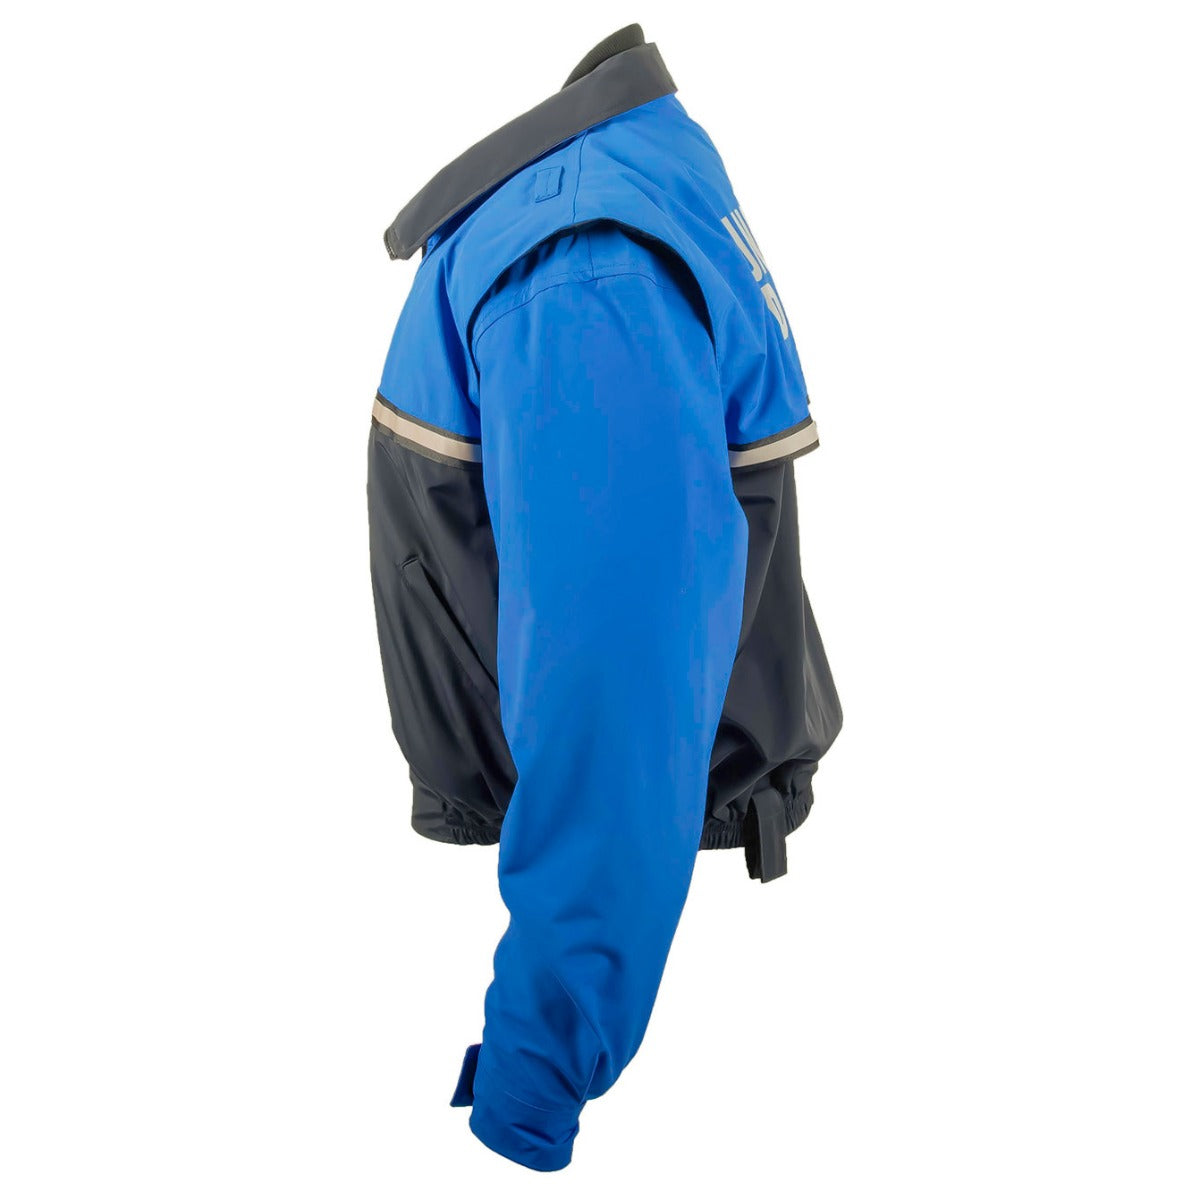 New York Zip Sleeve Jacket Waterproof - Sound Uniform Solutions